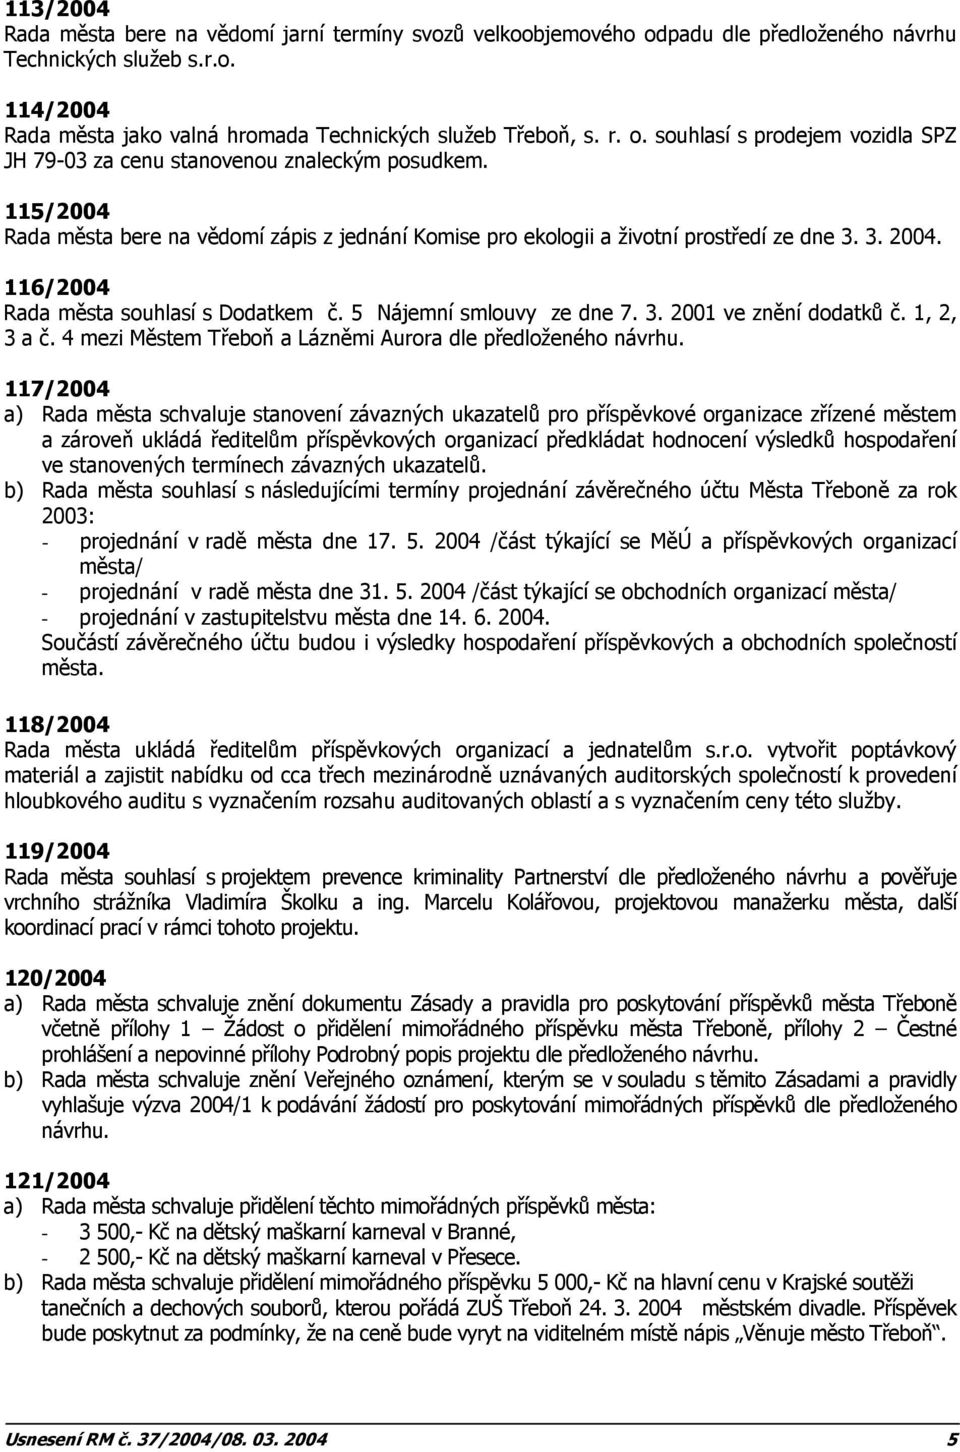 116/2004 Rada města souhlasí s Dodatkem č. 5 Nájemní smlouvy ze dne 7. 3. 2001 ve znění dodatků č. 1, 2, 3 a č. 4 mezi Městem Třeboň a Lázněmi Aurora dle předloženého návrhu.